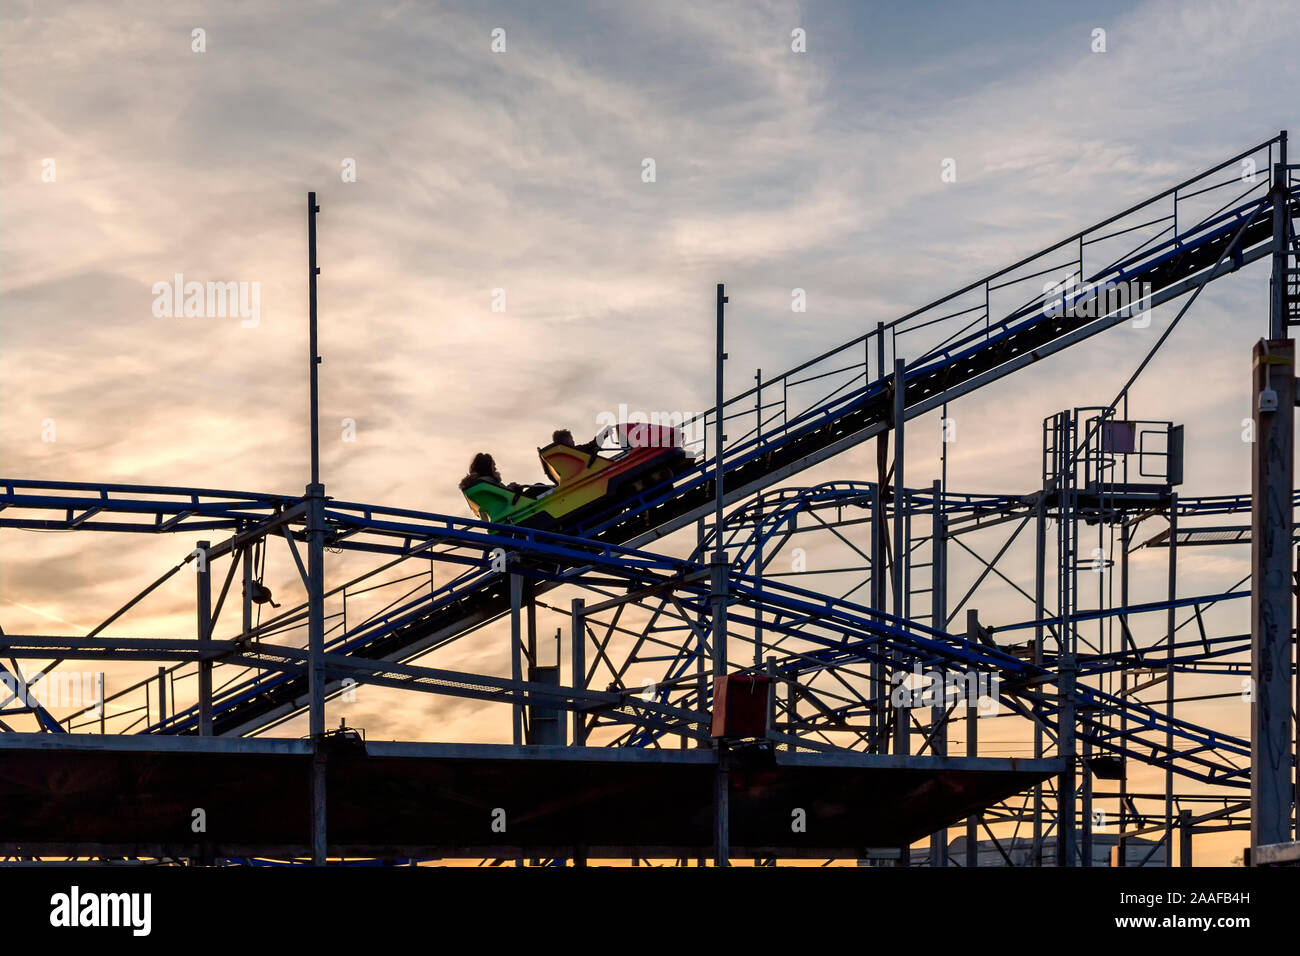 Un roller coaster sale su una pendenza ripida mentre piloti tenere la barra di sicurezza in previsione della caduta. Impostare contro un bel cielo d'oro. Foto Stock